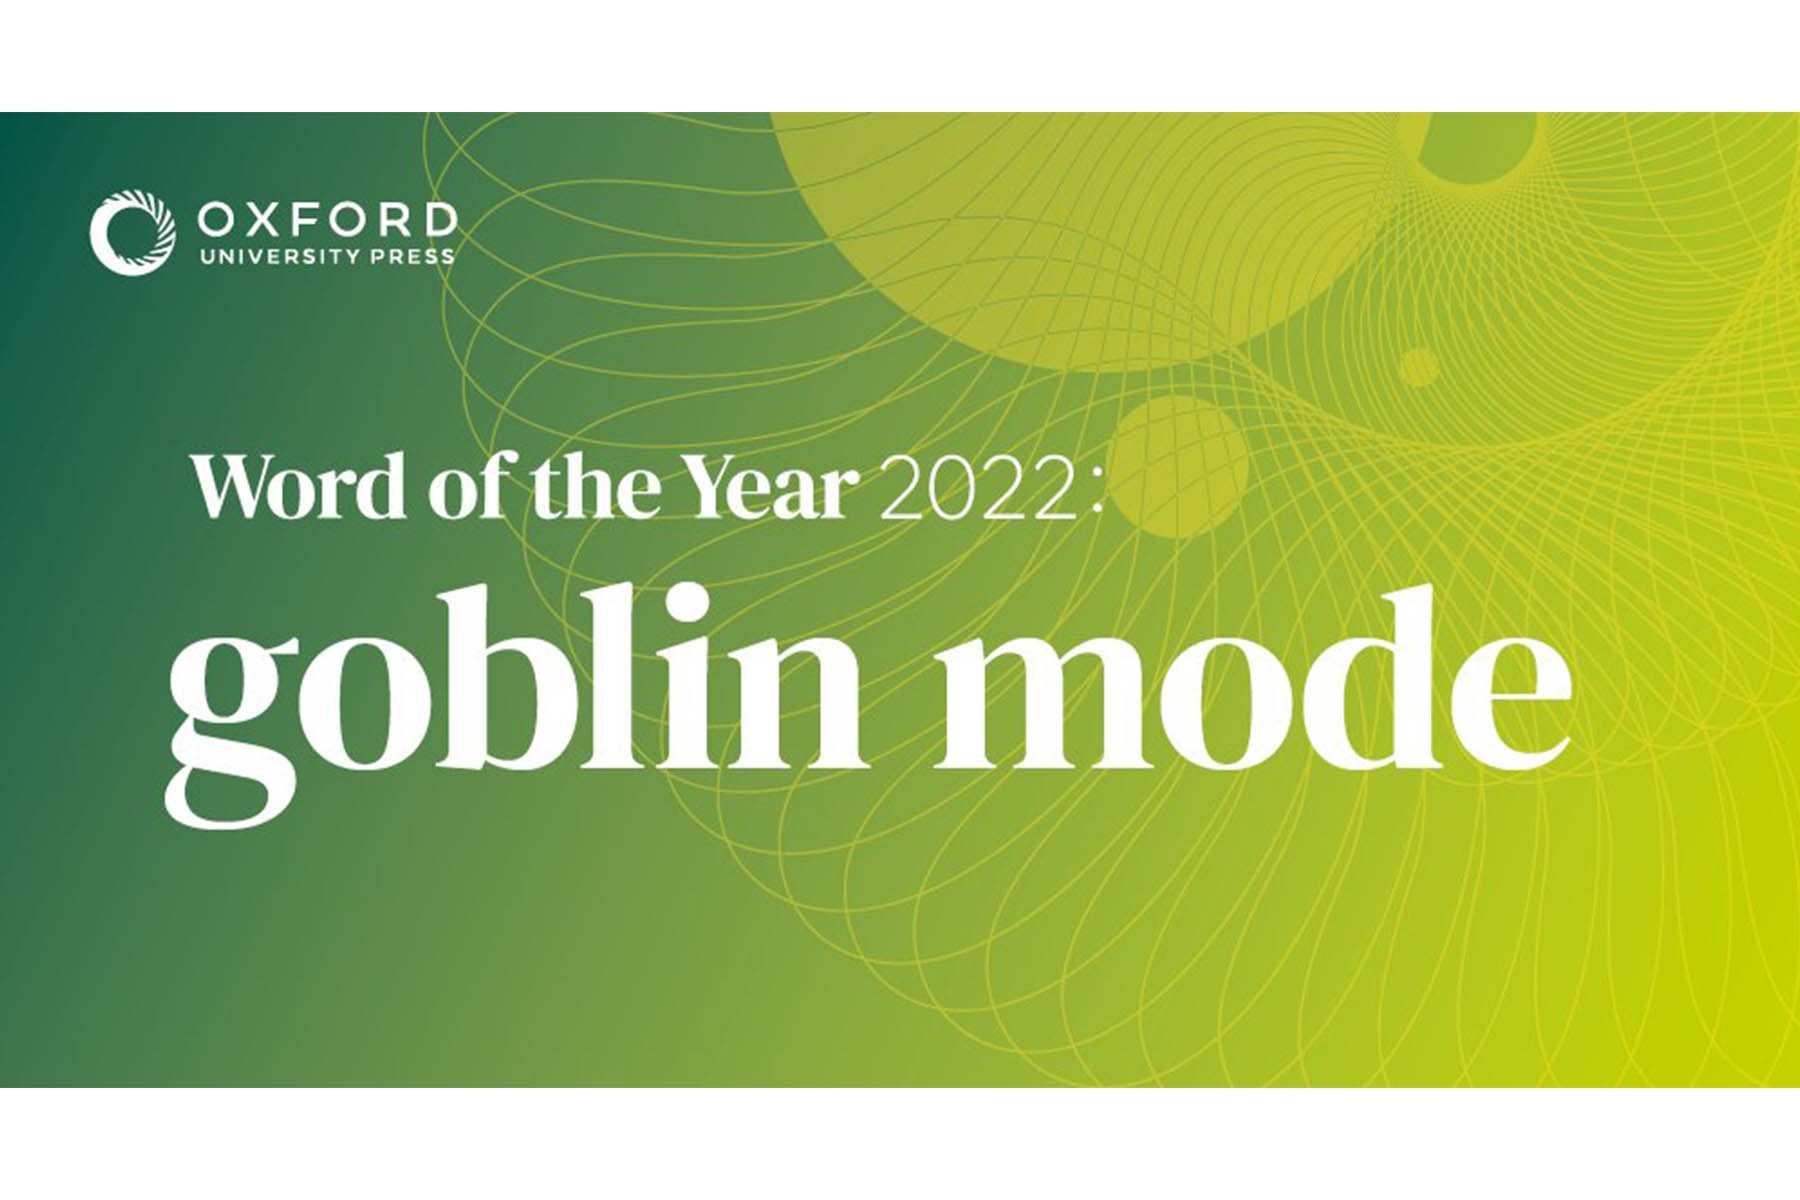 「Goblin mode」正式獲選成為牛津辭典 2022 年度代表字